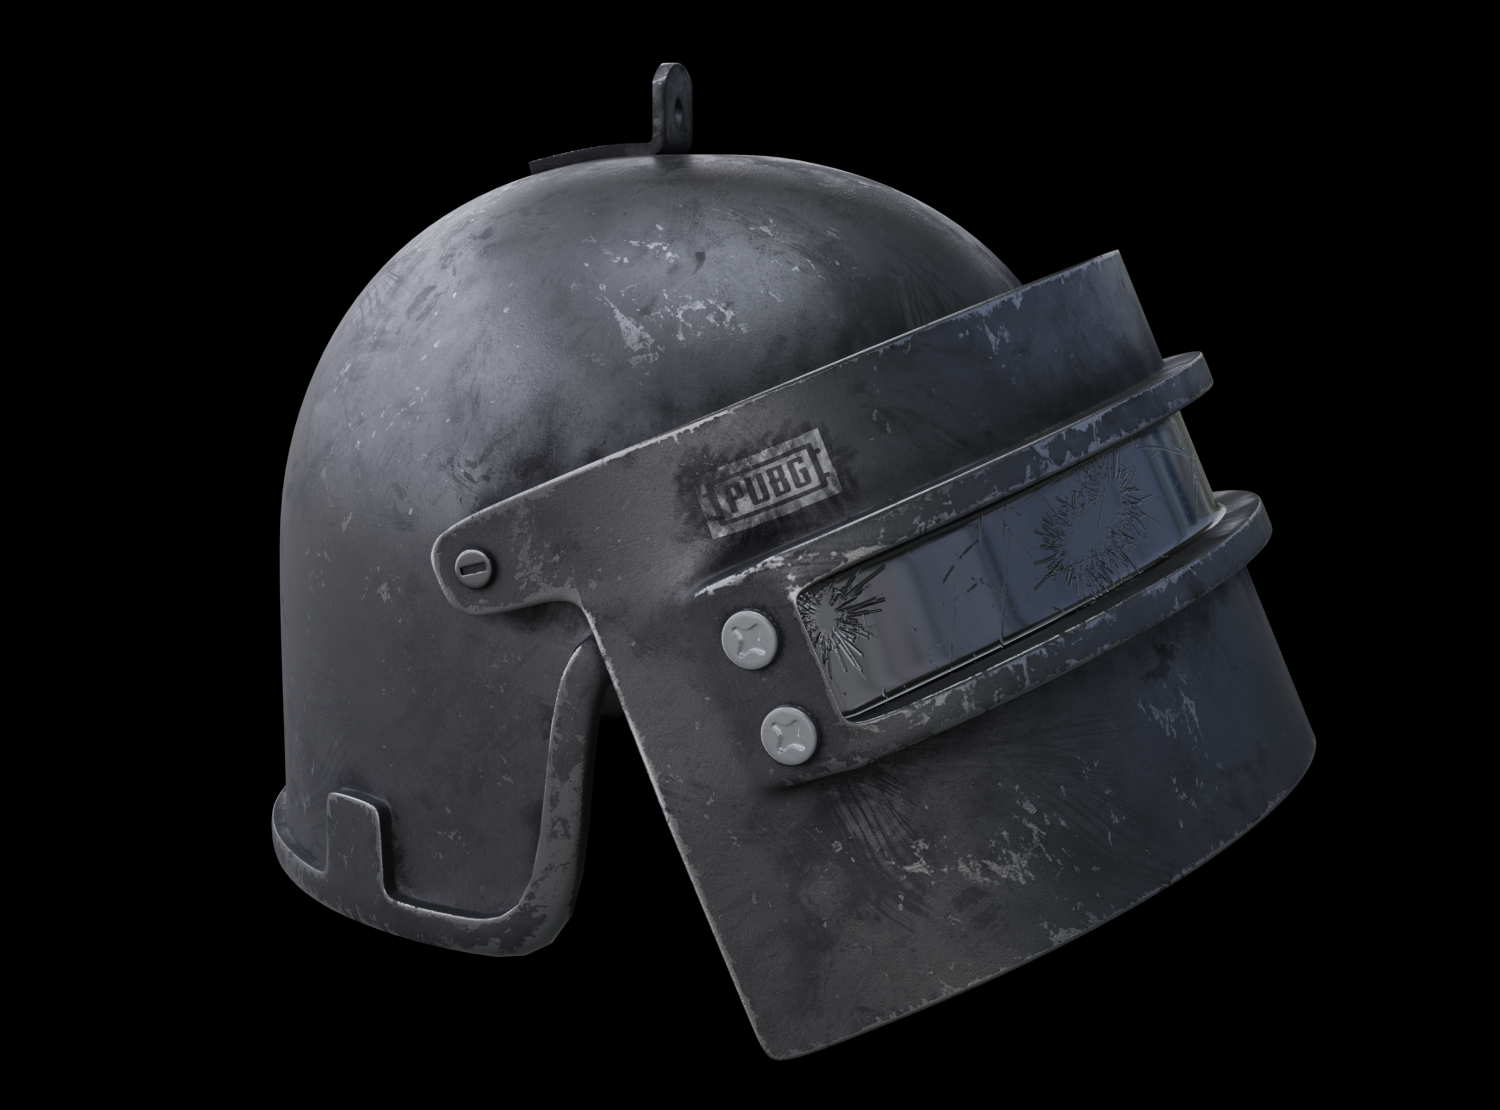 шлем 3 лвл из пабг фото 69